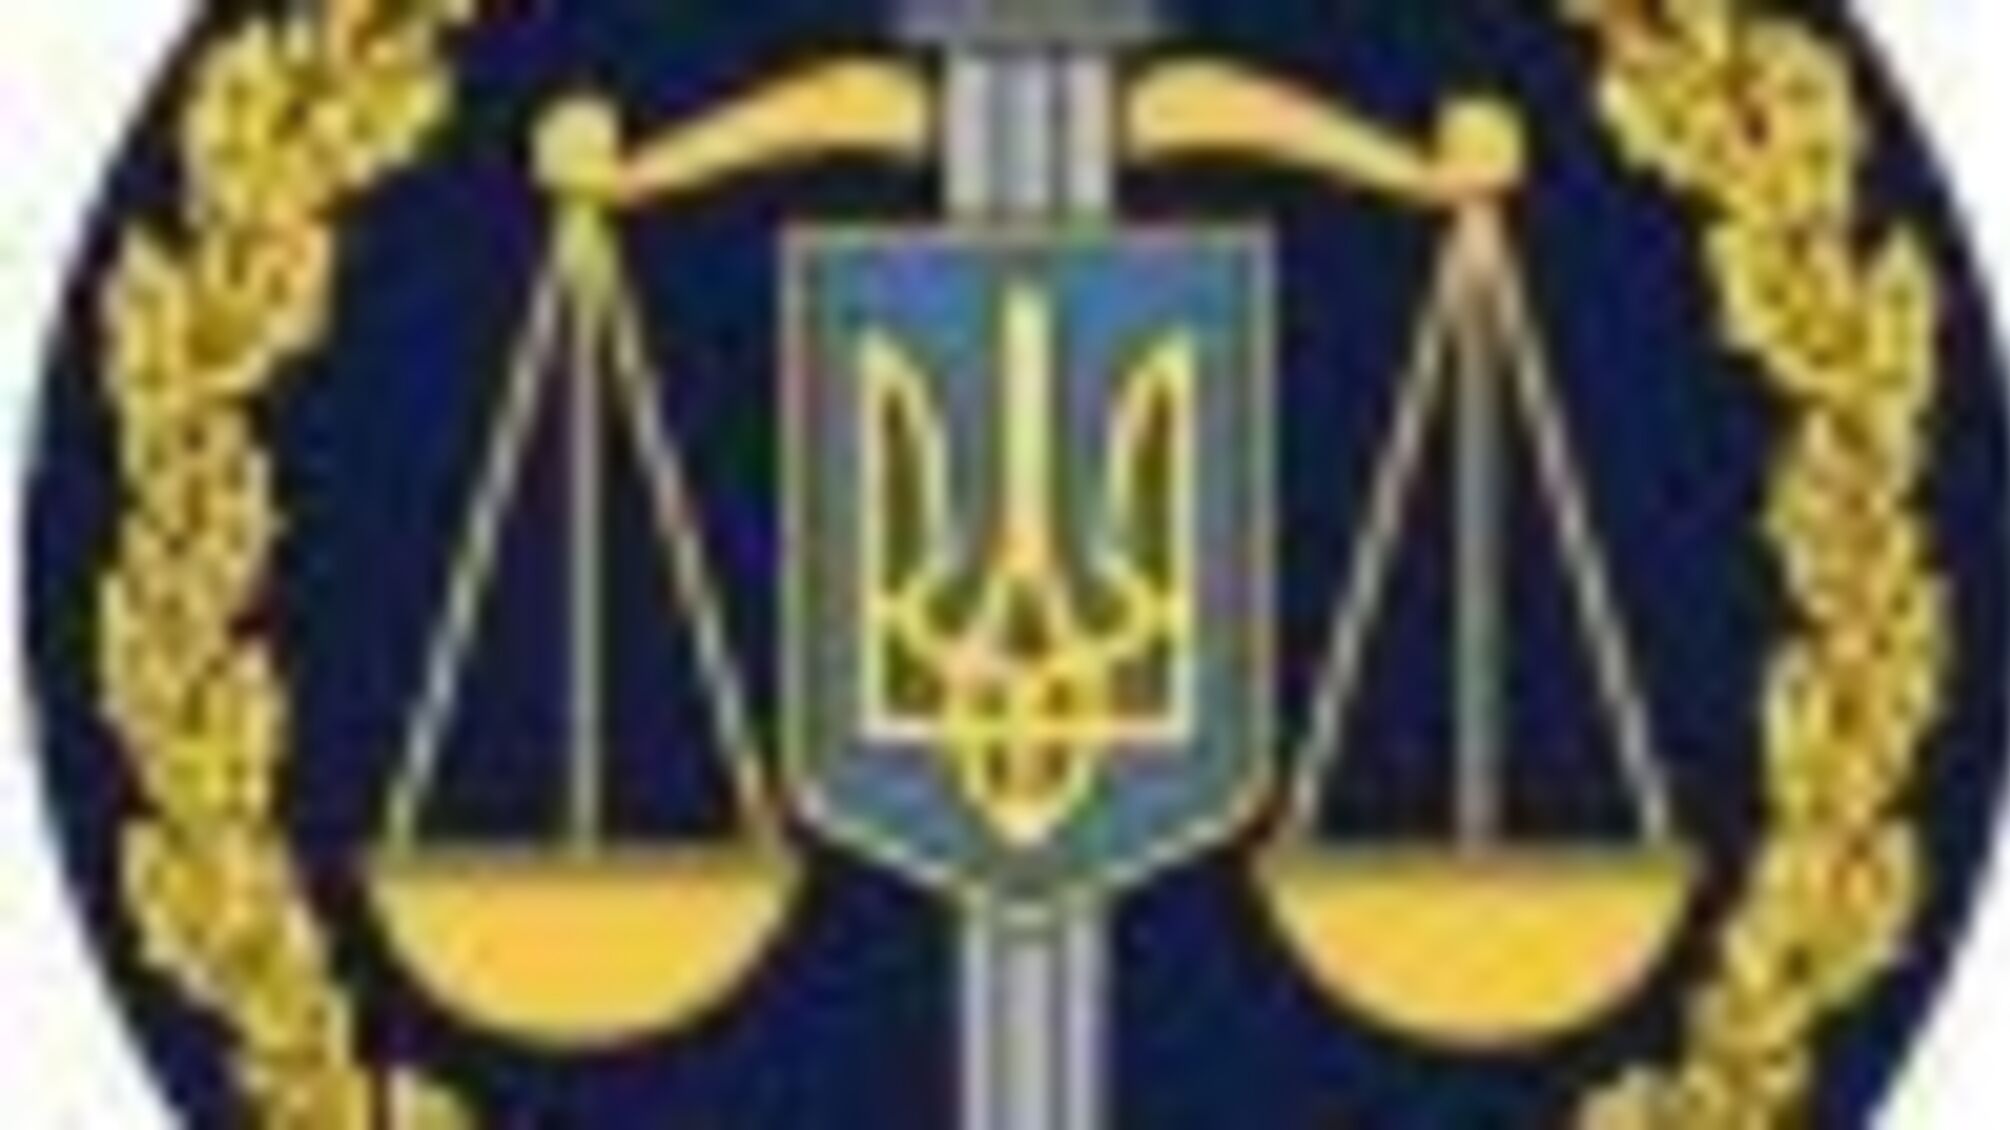 Припинено діяльність незаконного грального закладу в м. Балаклія Харківської області (ФОТО)